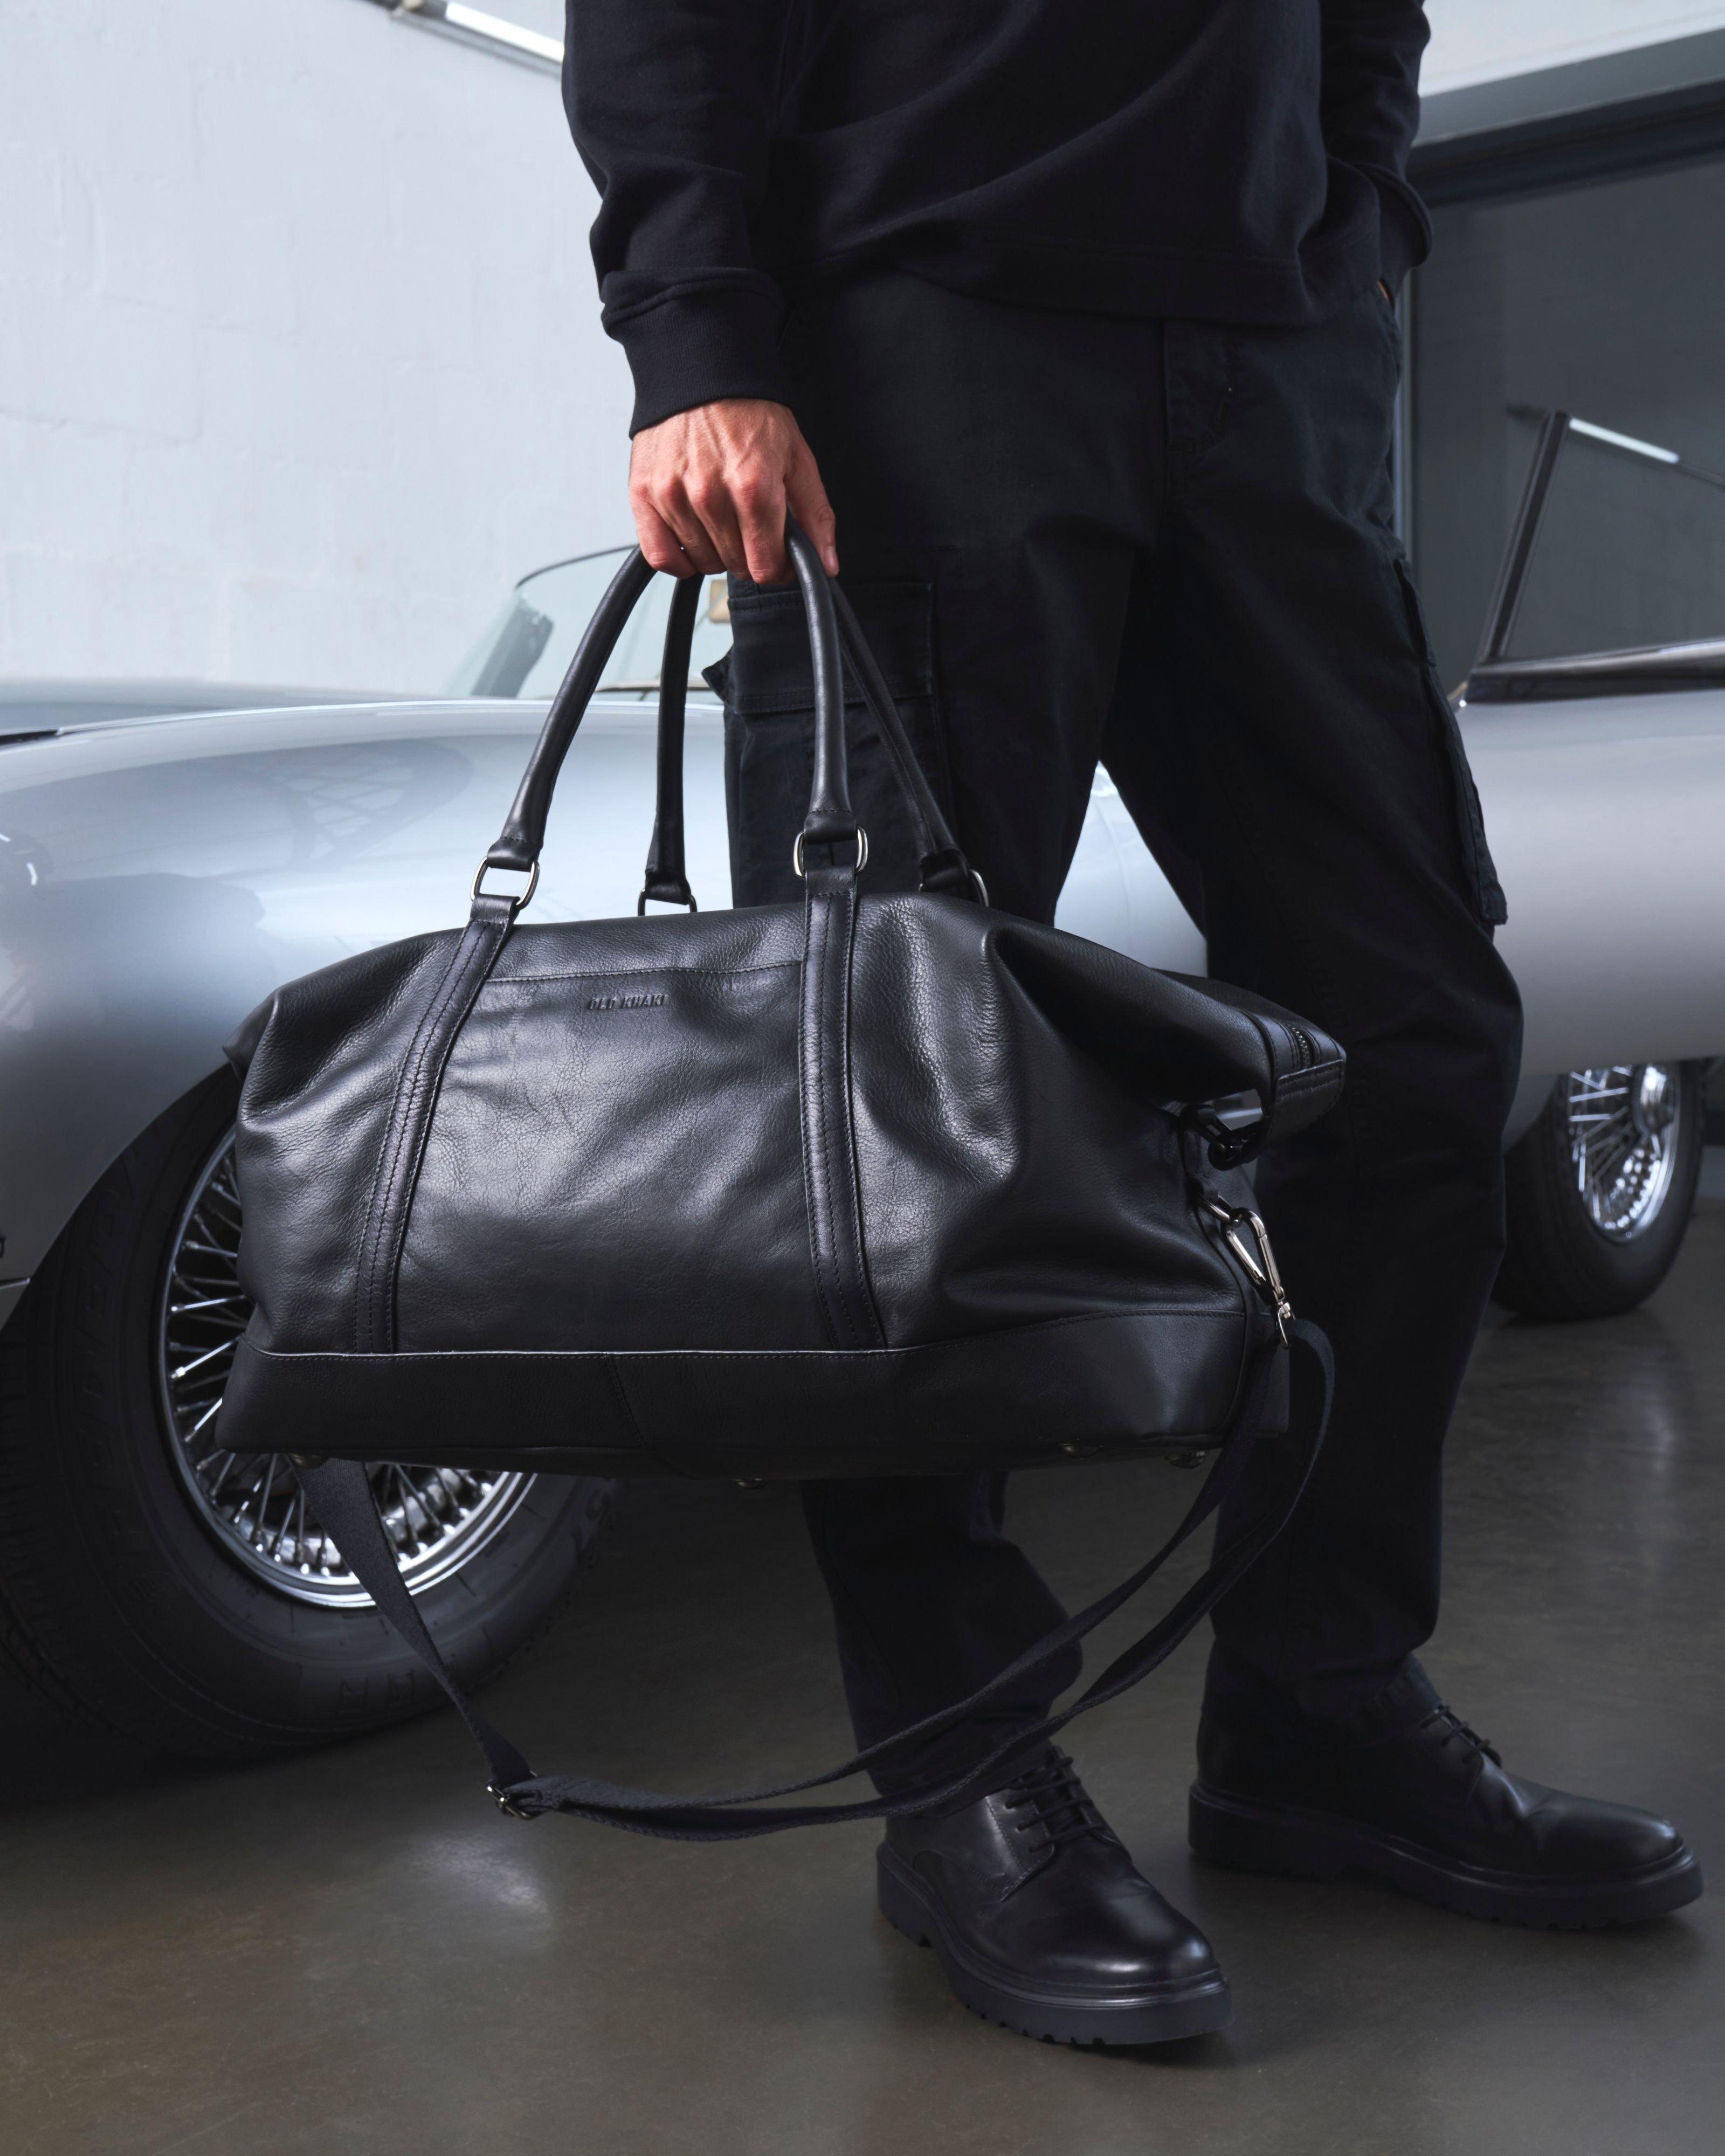 Unisex Rami Leather Weekender Bag -  Black